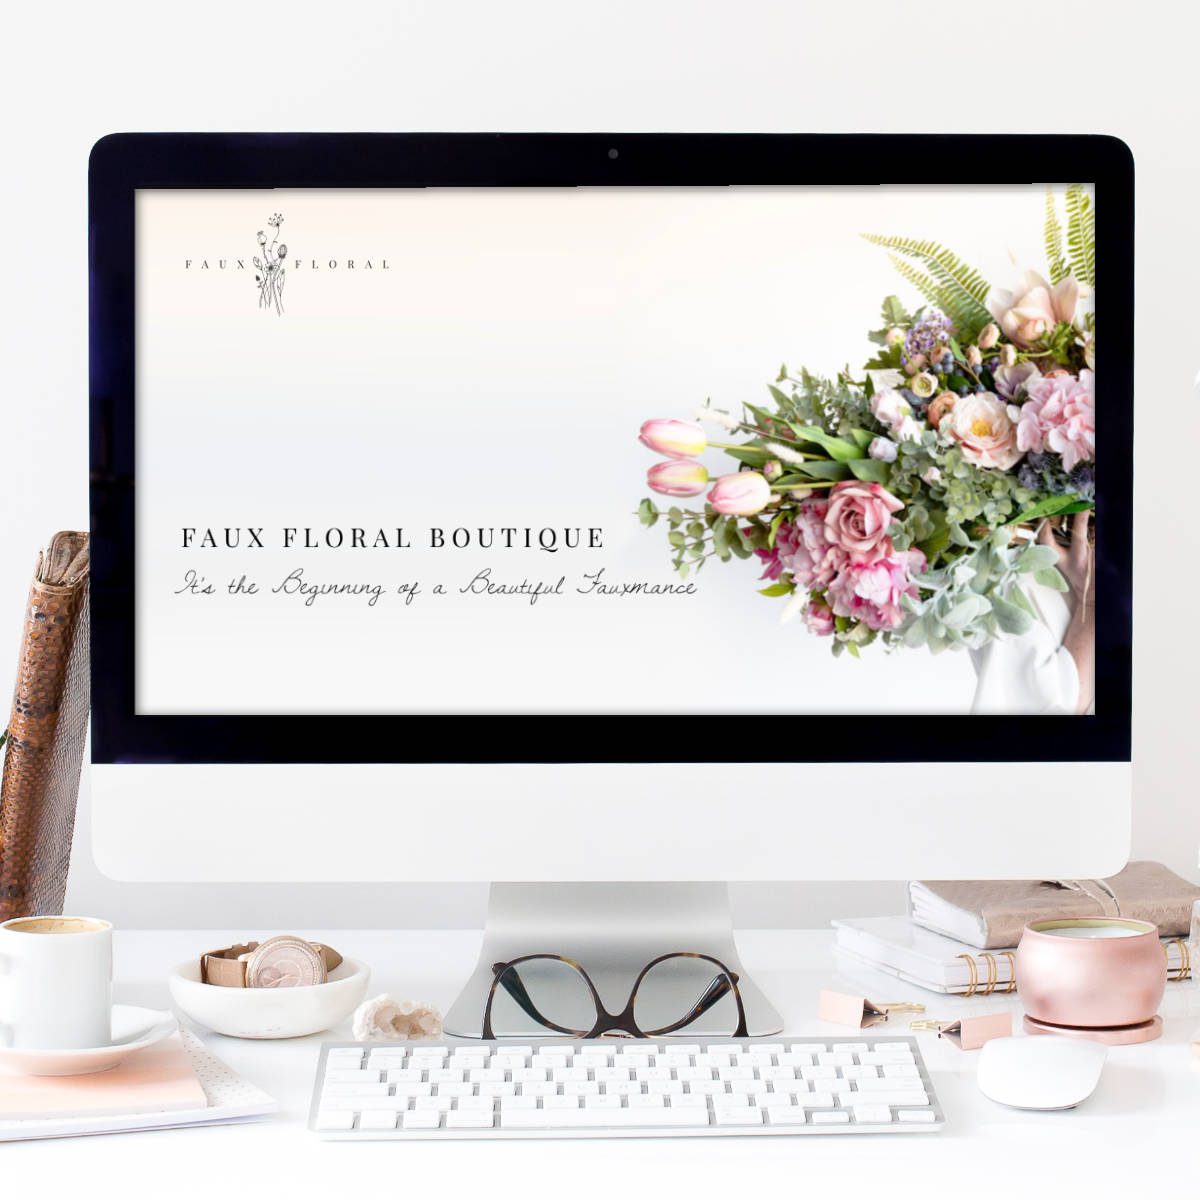 Oliver-Spence-Creative Website Design Faux Floral 2